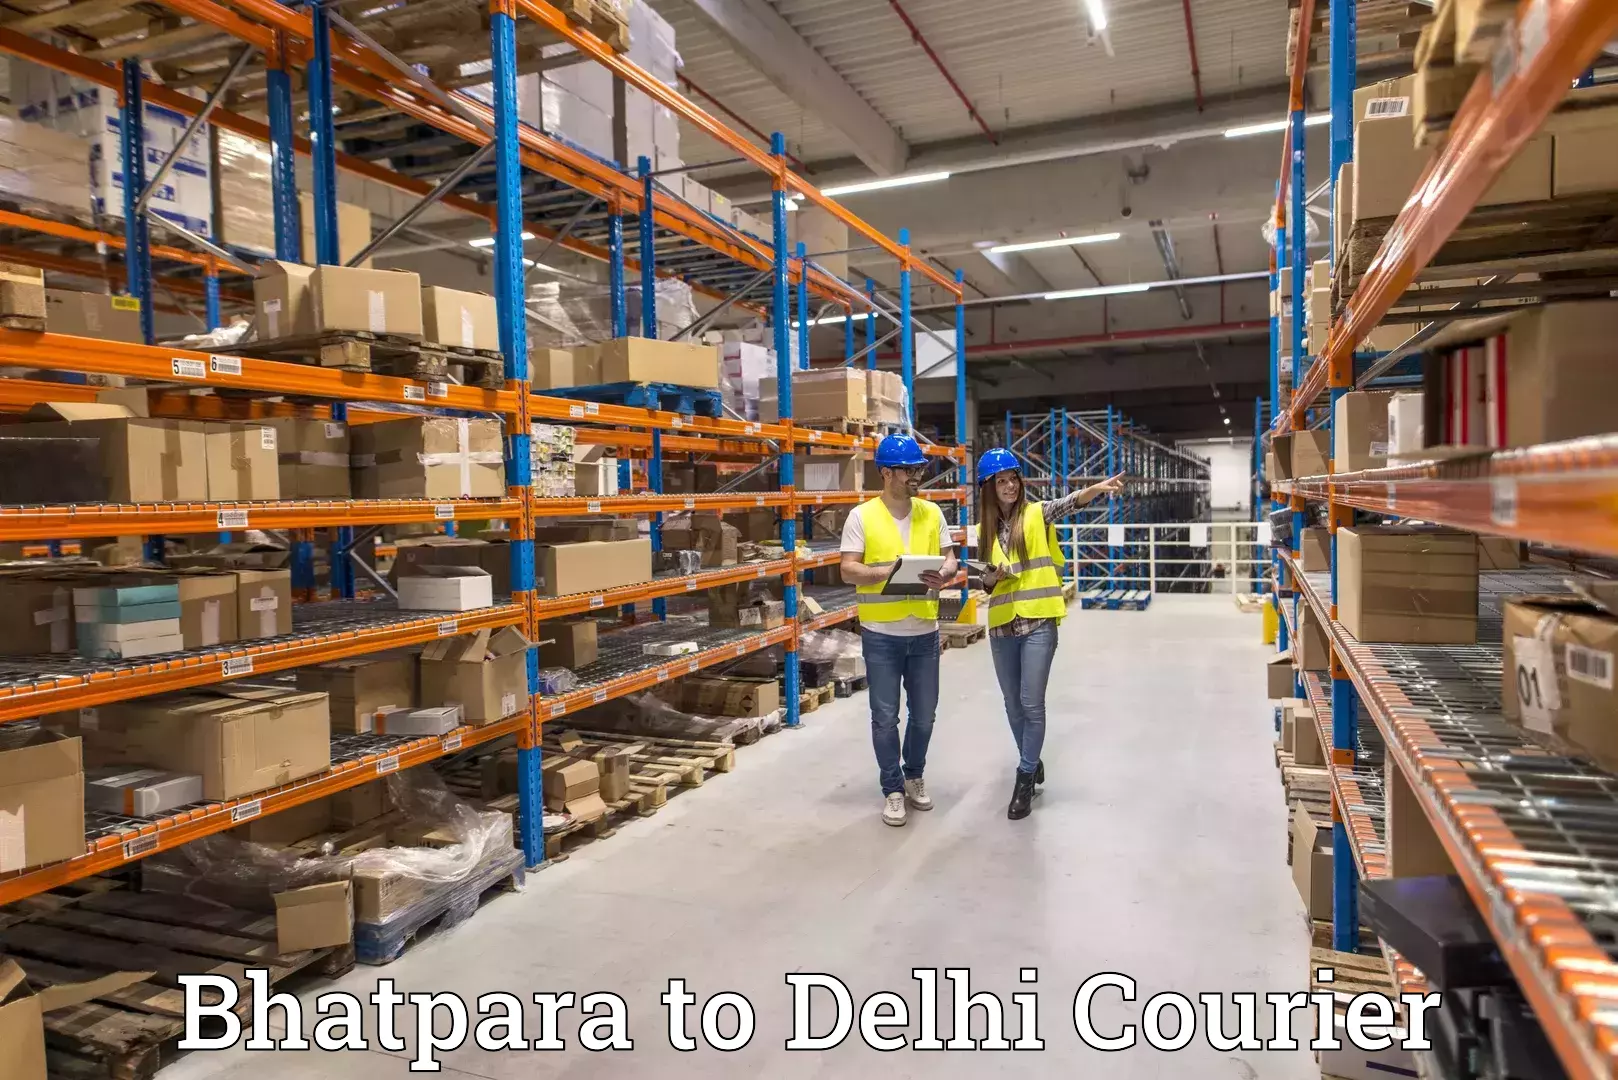 Express logistics providers Bhatpara to Kalkaji